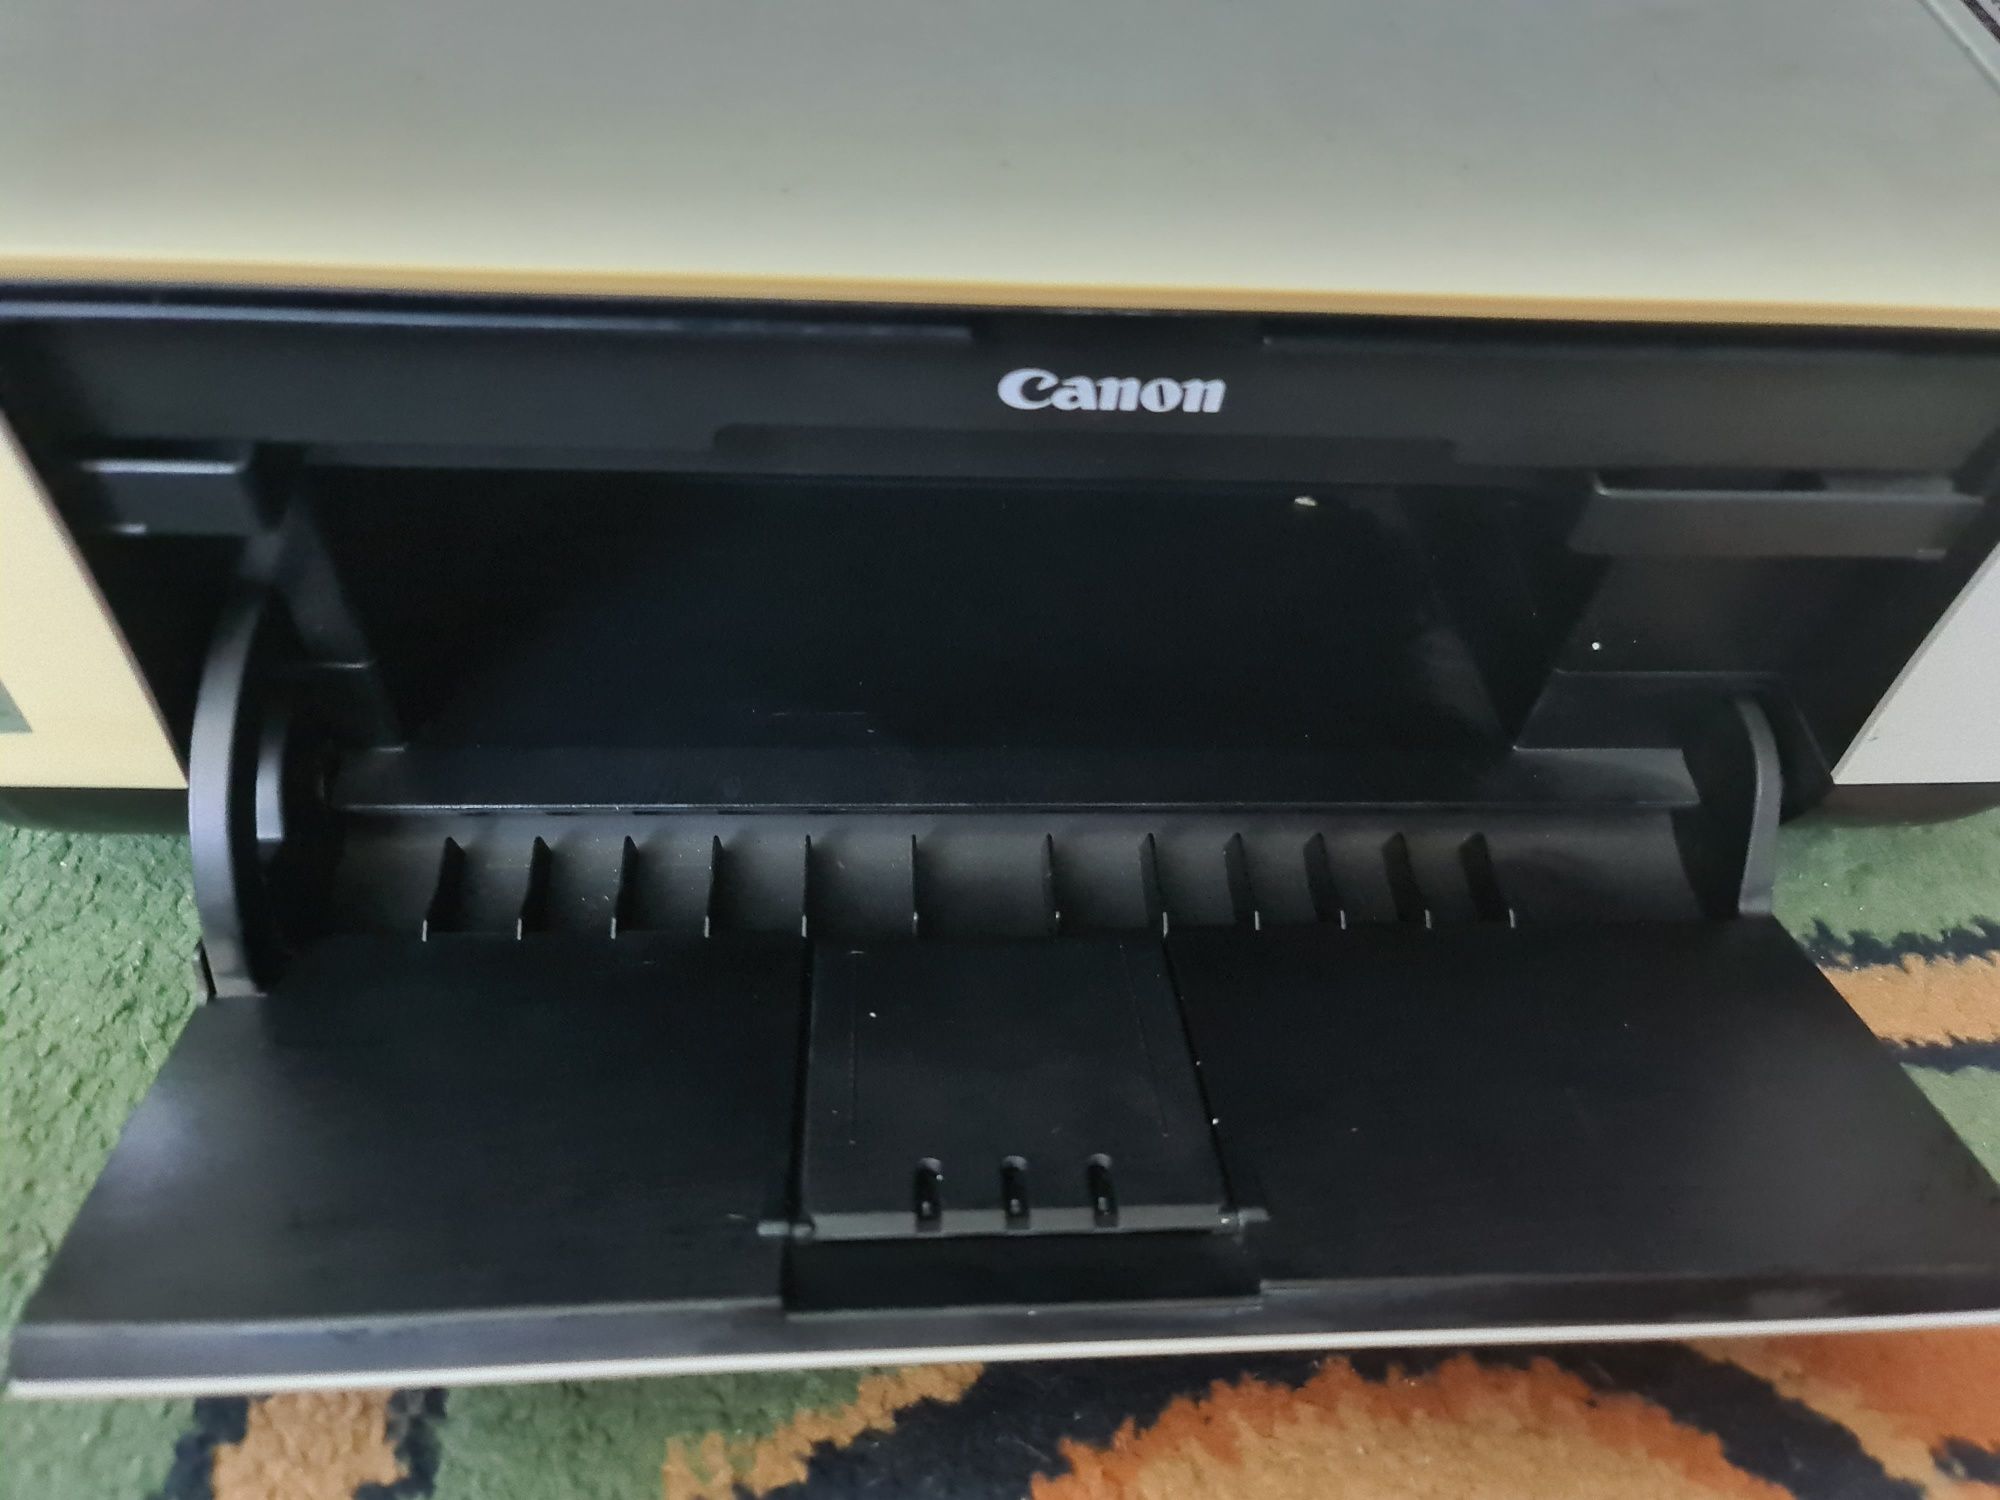 Продам принтер-сканер